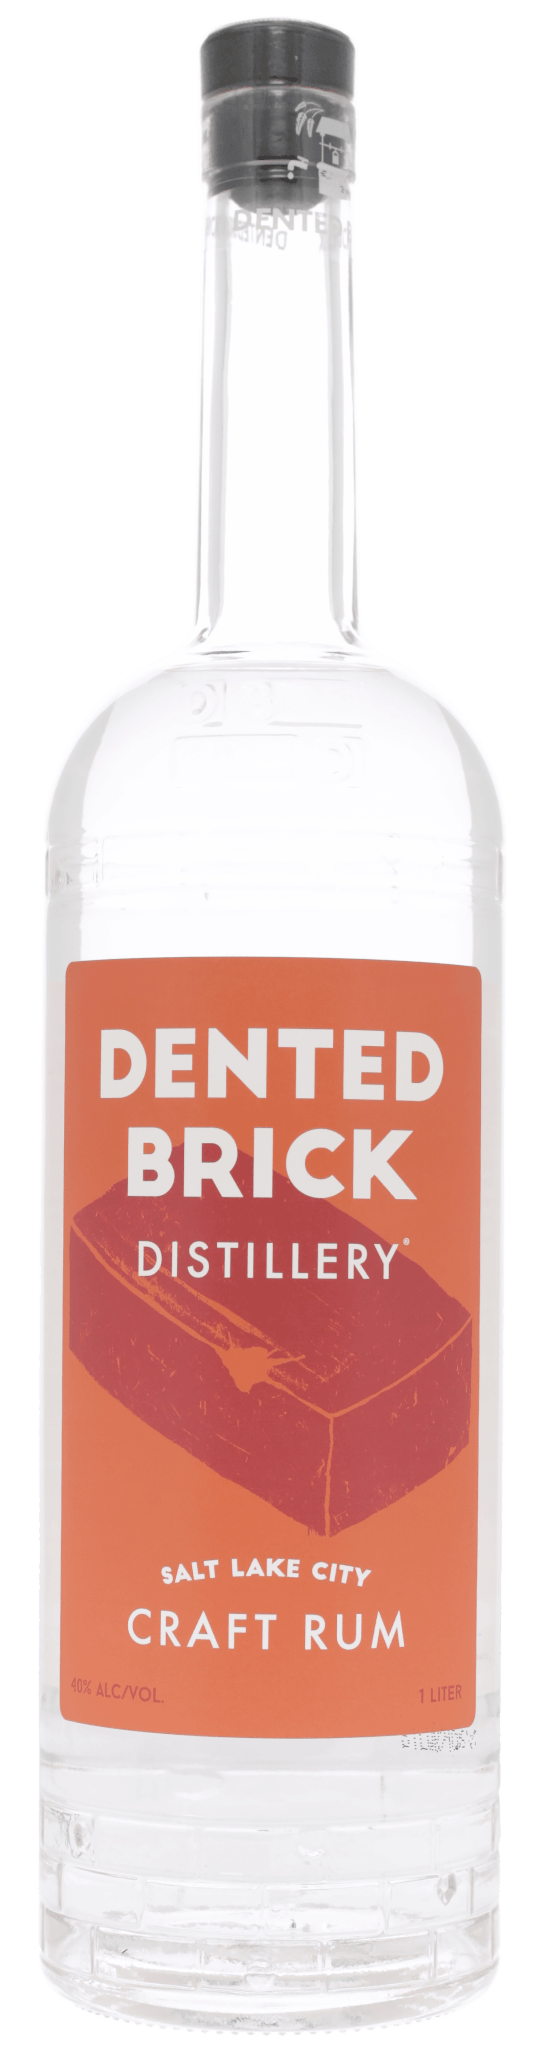 Dented Brick Craft Rum